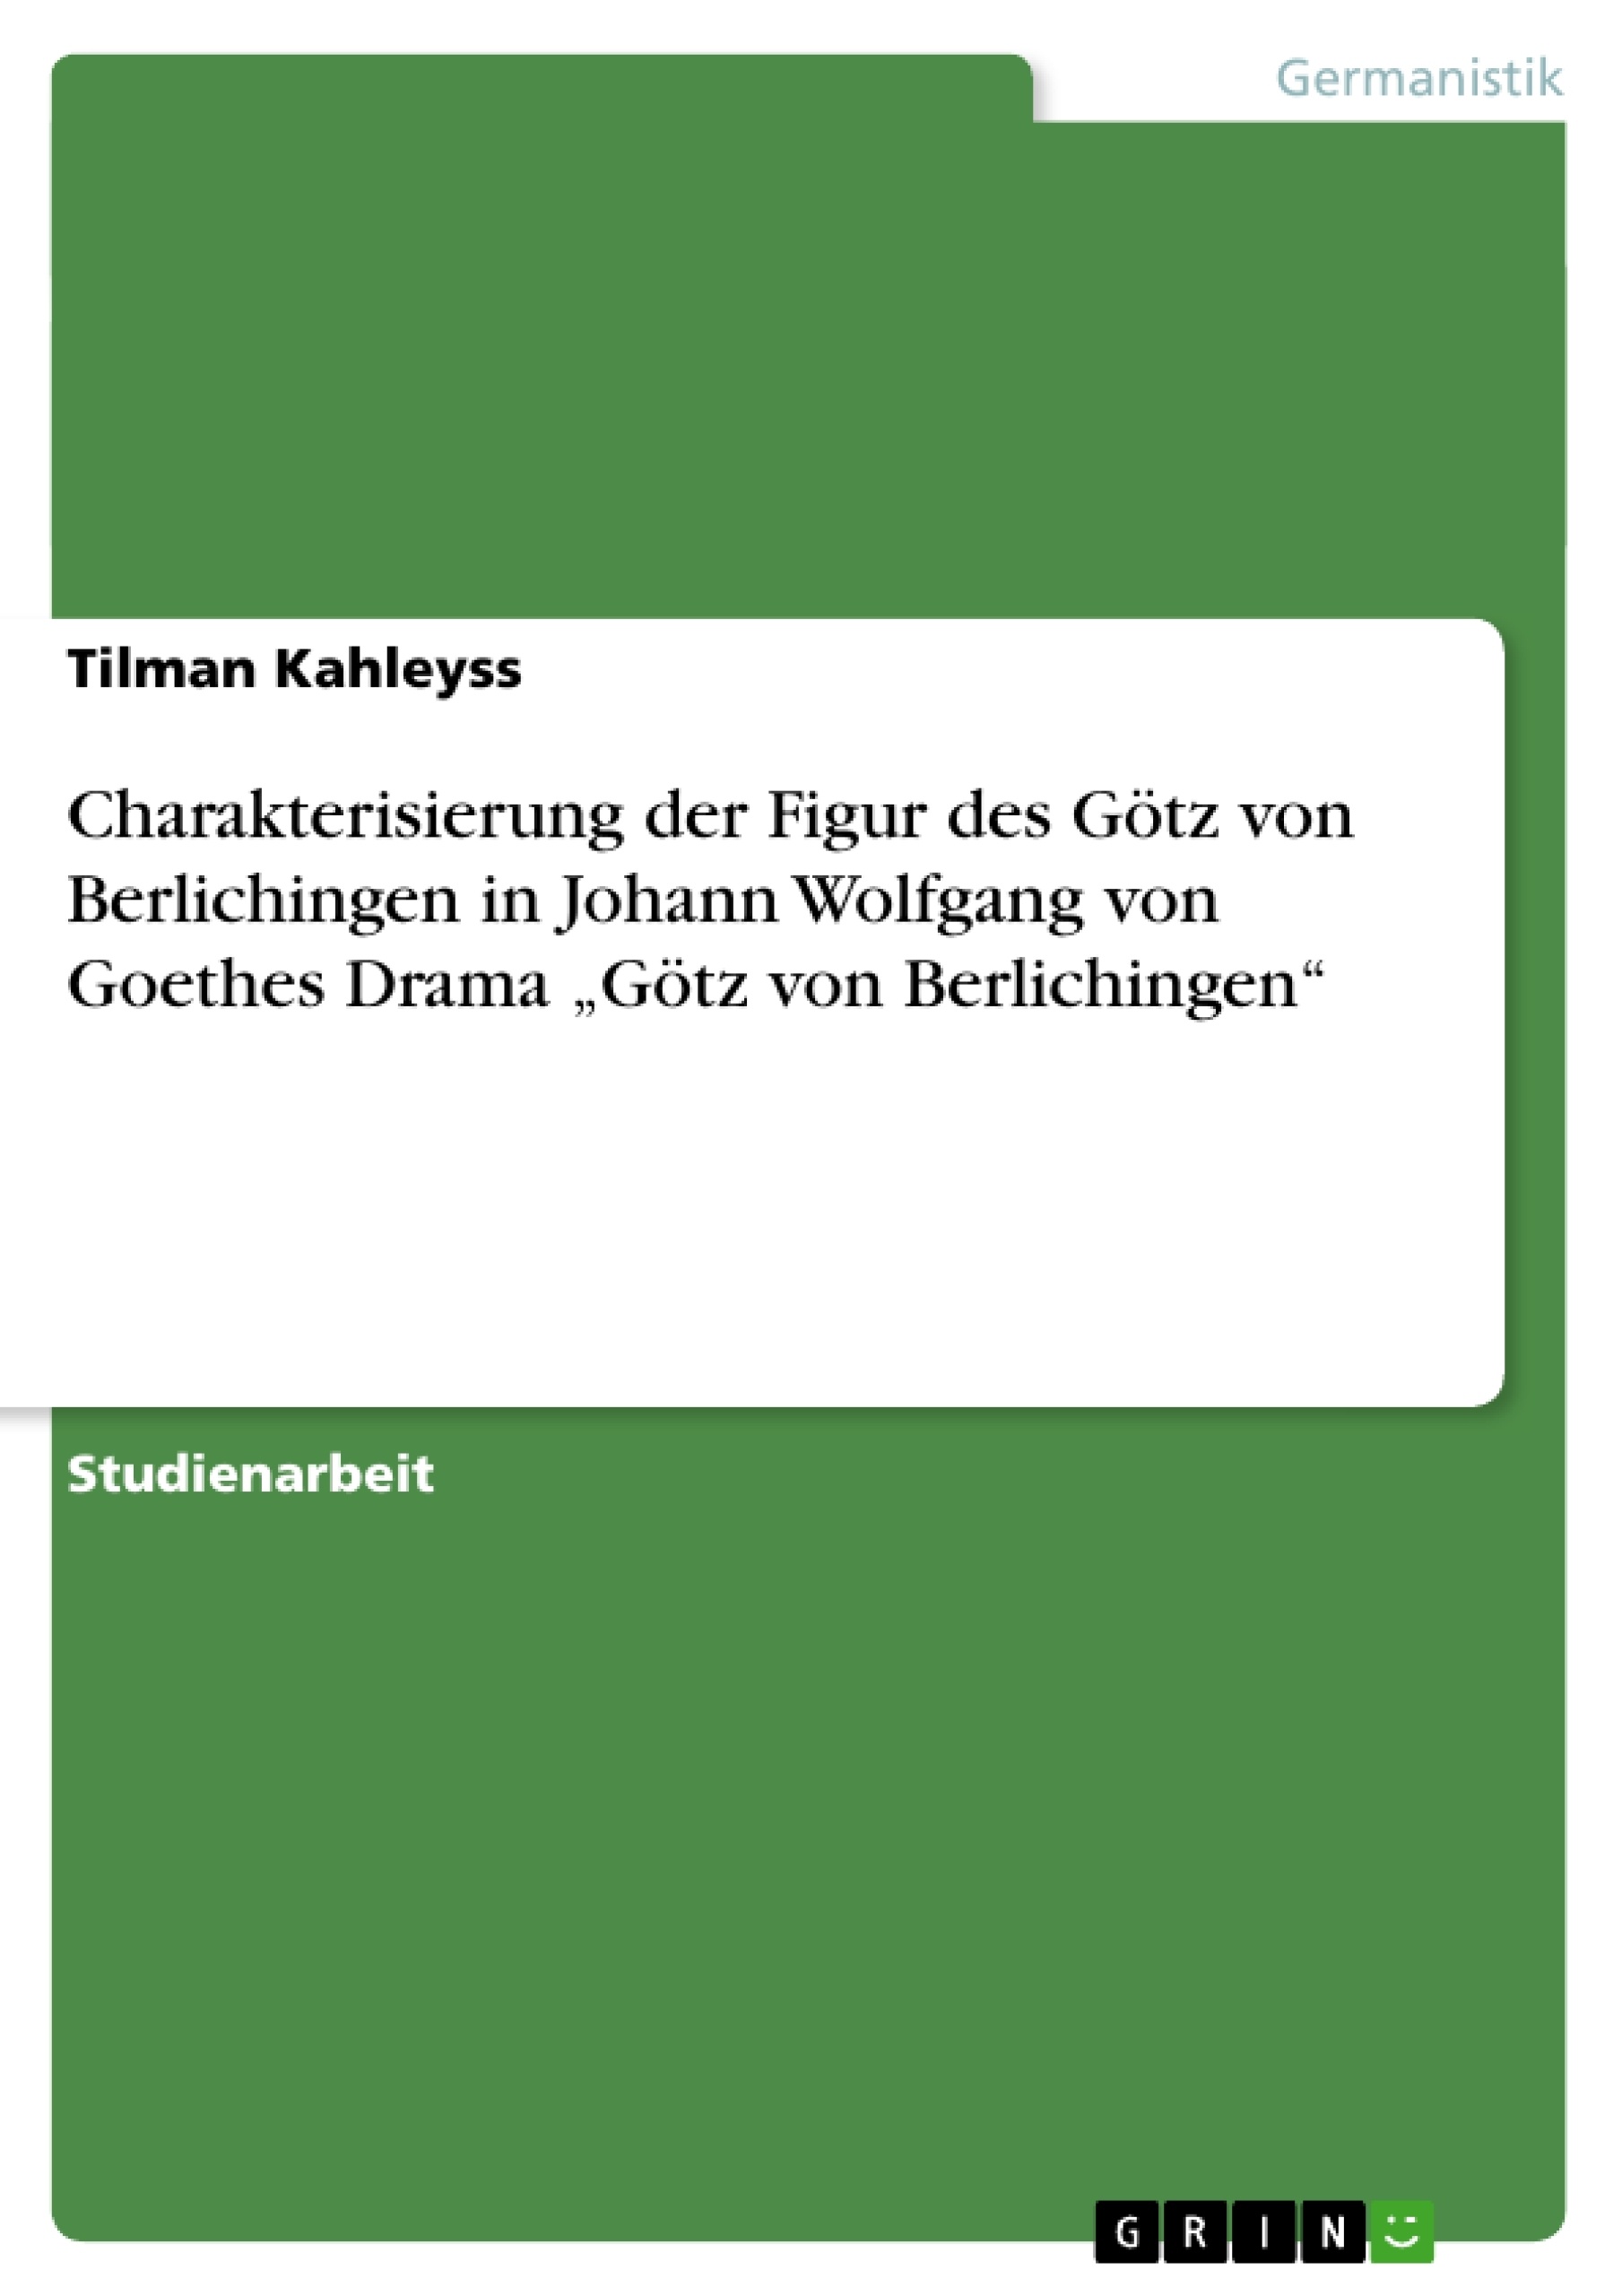 Título: Charakterisierung der Figur des Götz von Berlichingen in Johann Wolfgang von Goethes Drama „Götz von Berlichingen“